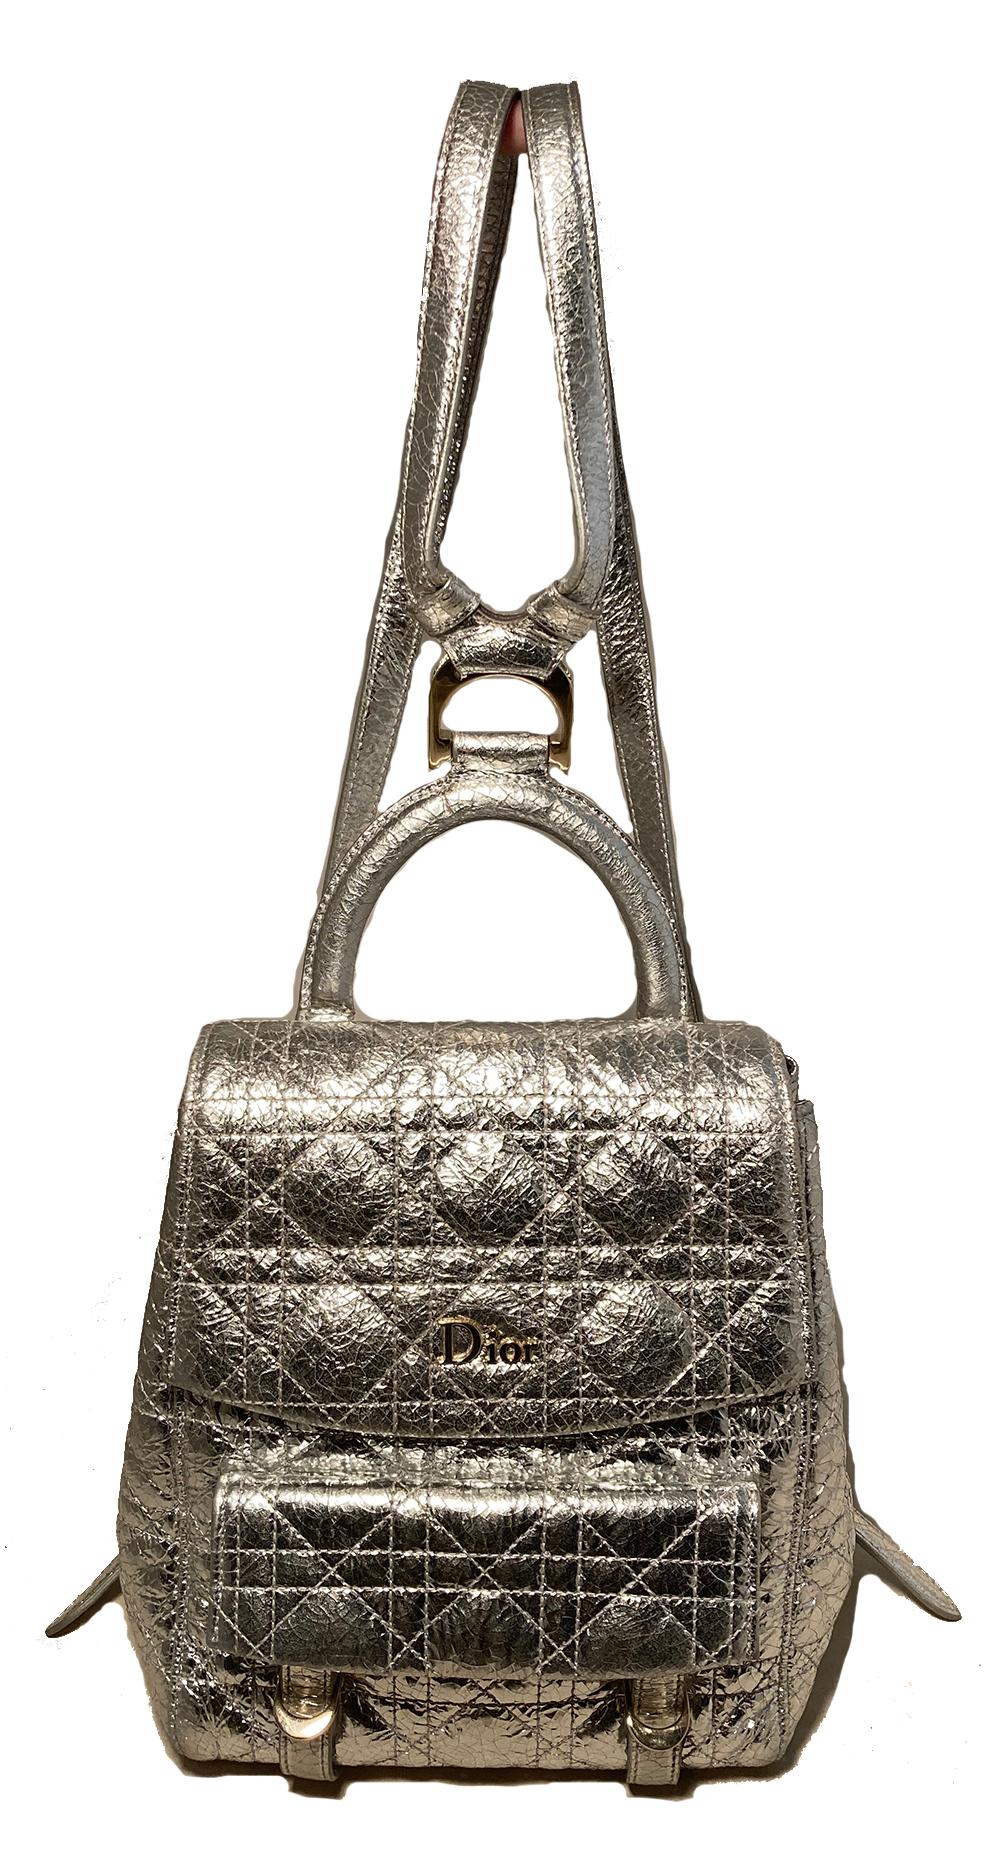 Dior Stardust silberner Lederrucksack in ausgezeichnetem Zustand. Außen aus silbernem Craquelé-Lackleder, gesteppt im klassischen Dior-Cannage-Stil und mit silberner Hardware verziert. Fronttasche mit doppelter Schnalle und Klappe. Gesäßtasche mit